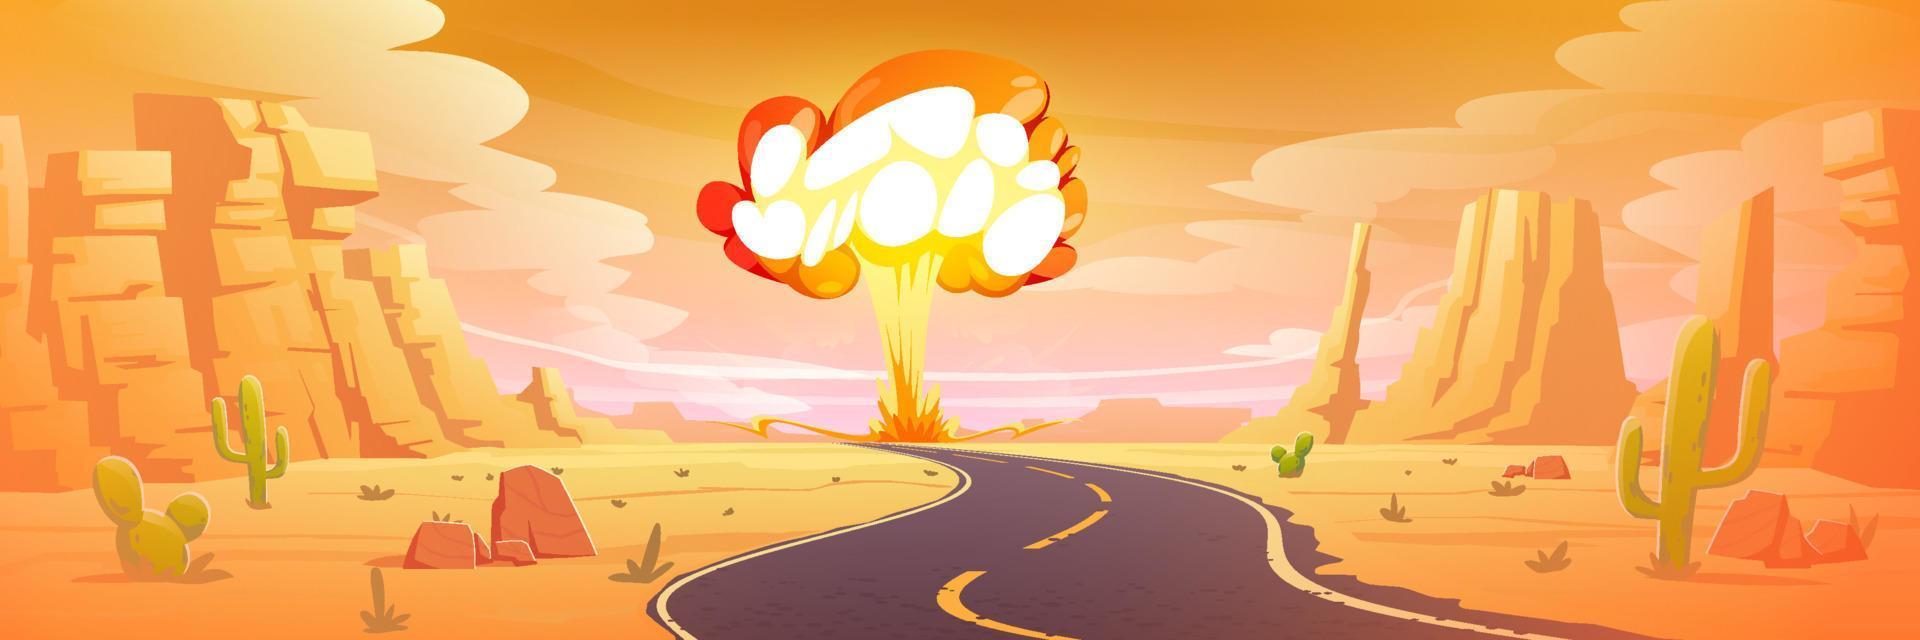 nucleare bomba esplosione nel deserto, bomba atomica fungo vettore